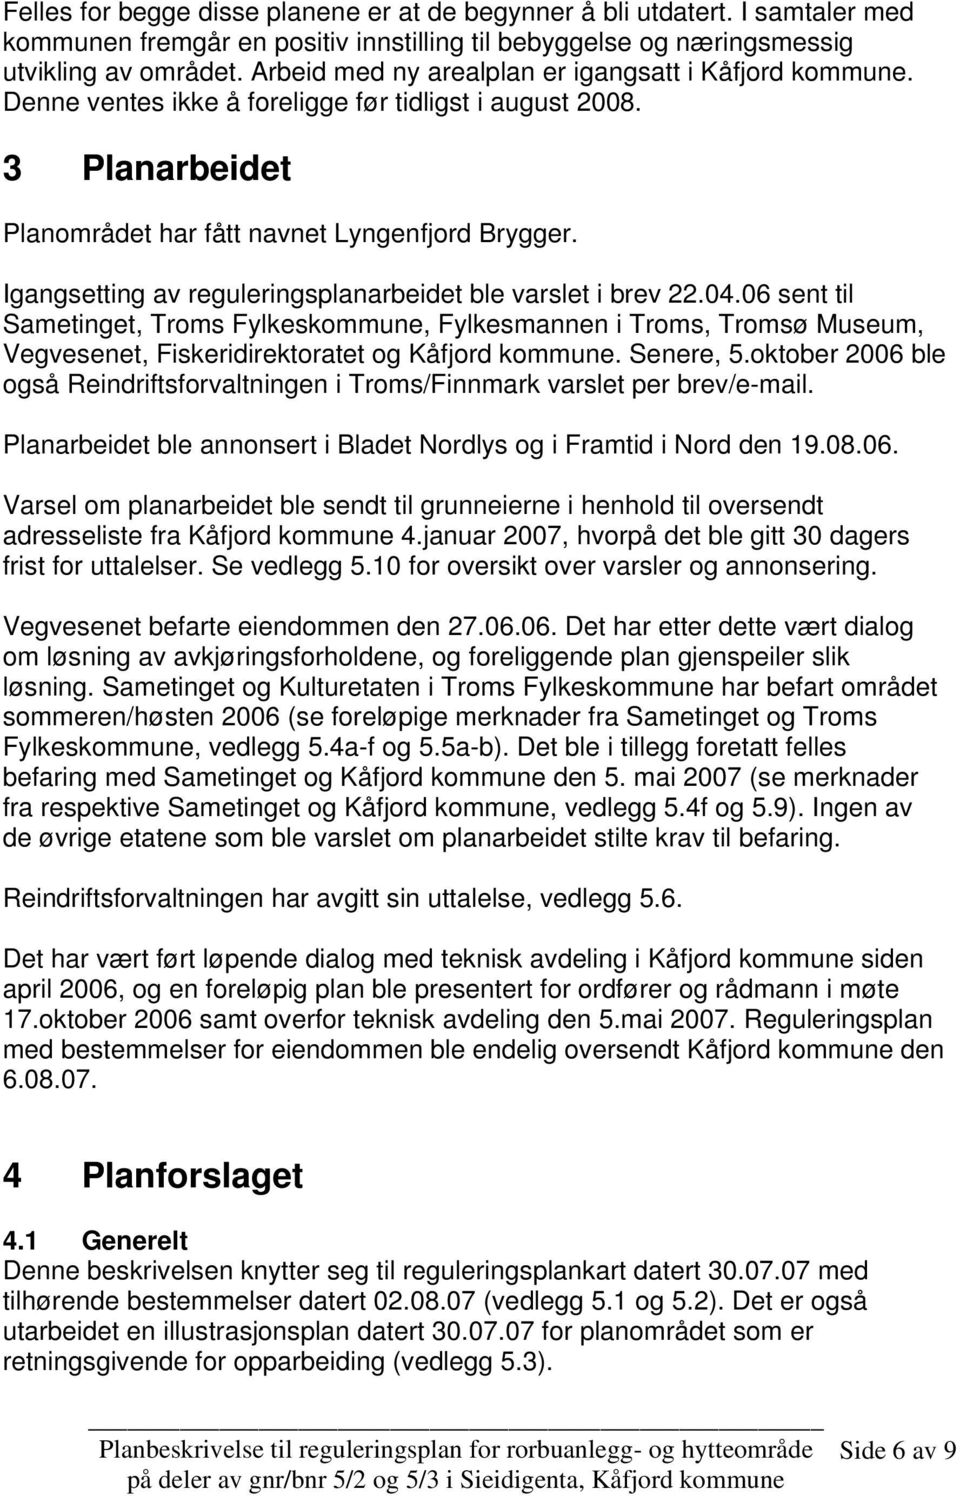 Igangsetting av reguleringsplanarbeidet ble varslet i brev 22.04.06 sent til Sametinget, Troms Fylkeskommune, Fylkesmannen i Troms, Tromsø Museum, Vegvesenet, Fiskeridirektoratet og Kåfjord kommune.